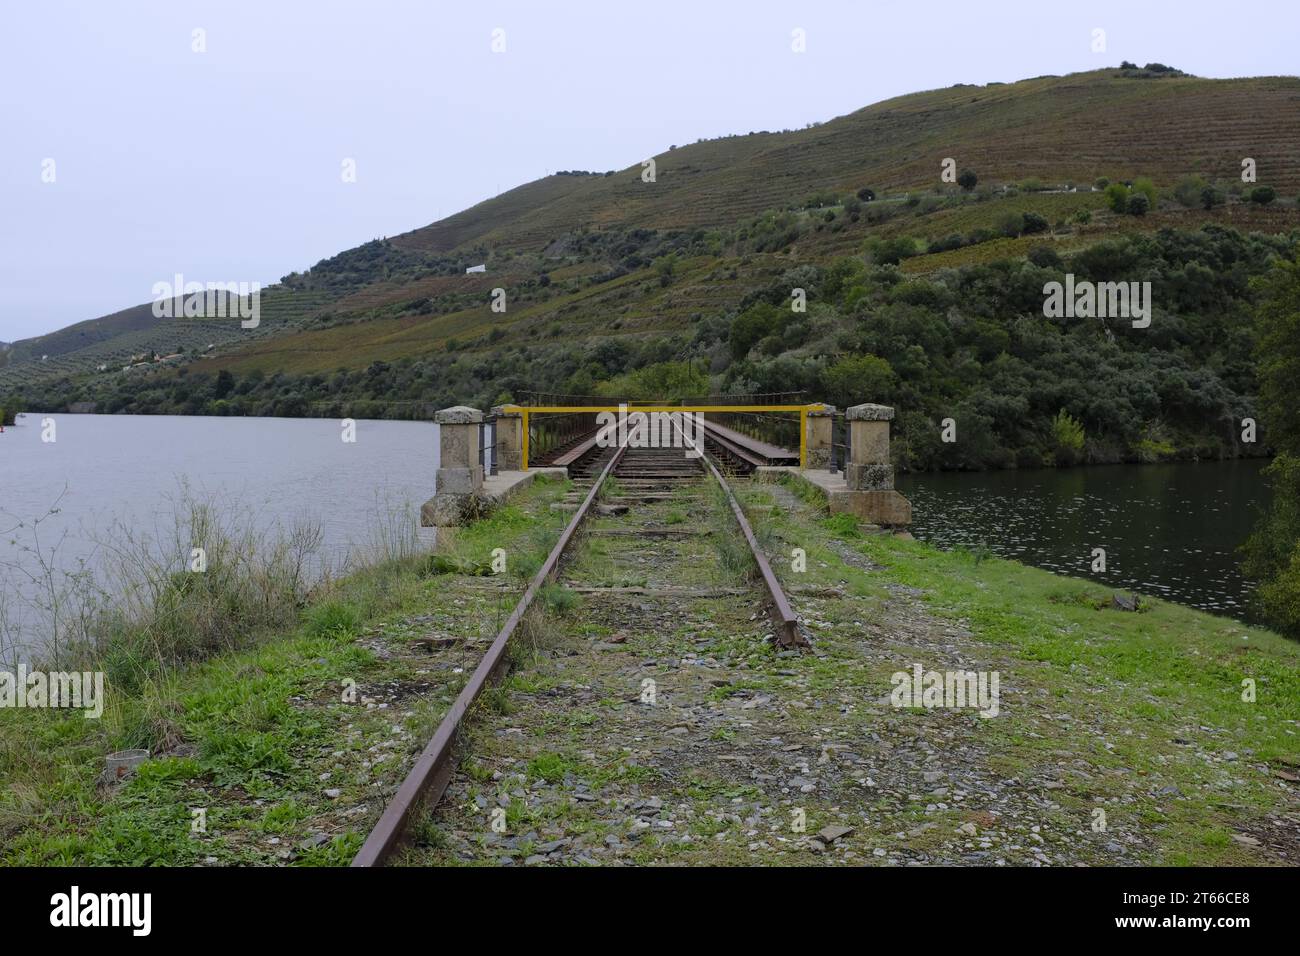 old train bridge in the Douro Valley, close to the Tua River, Portugal Stock Photo